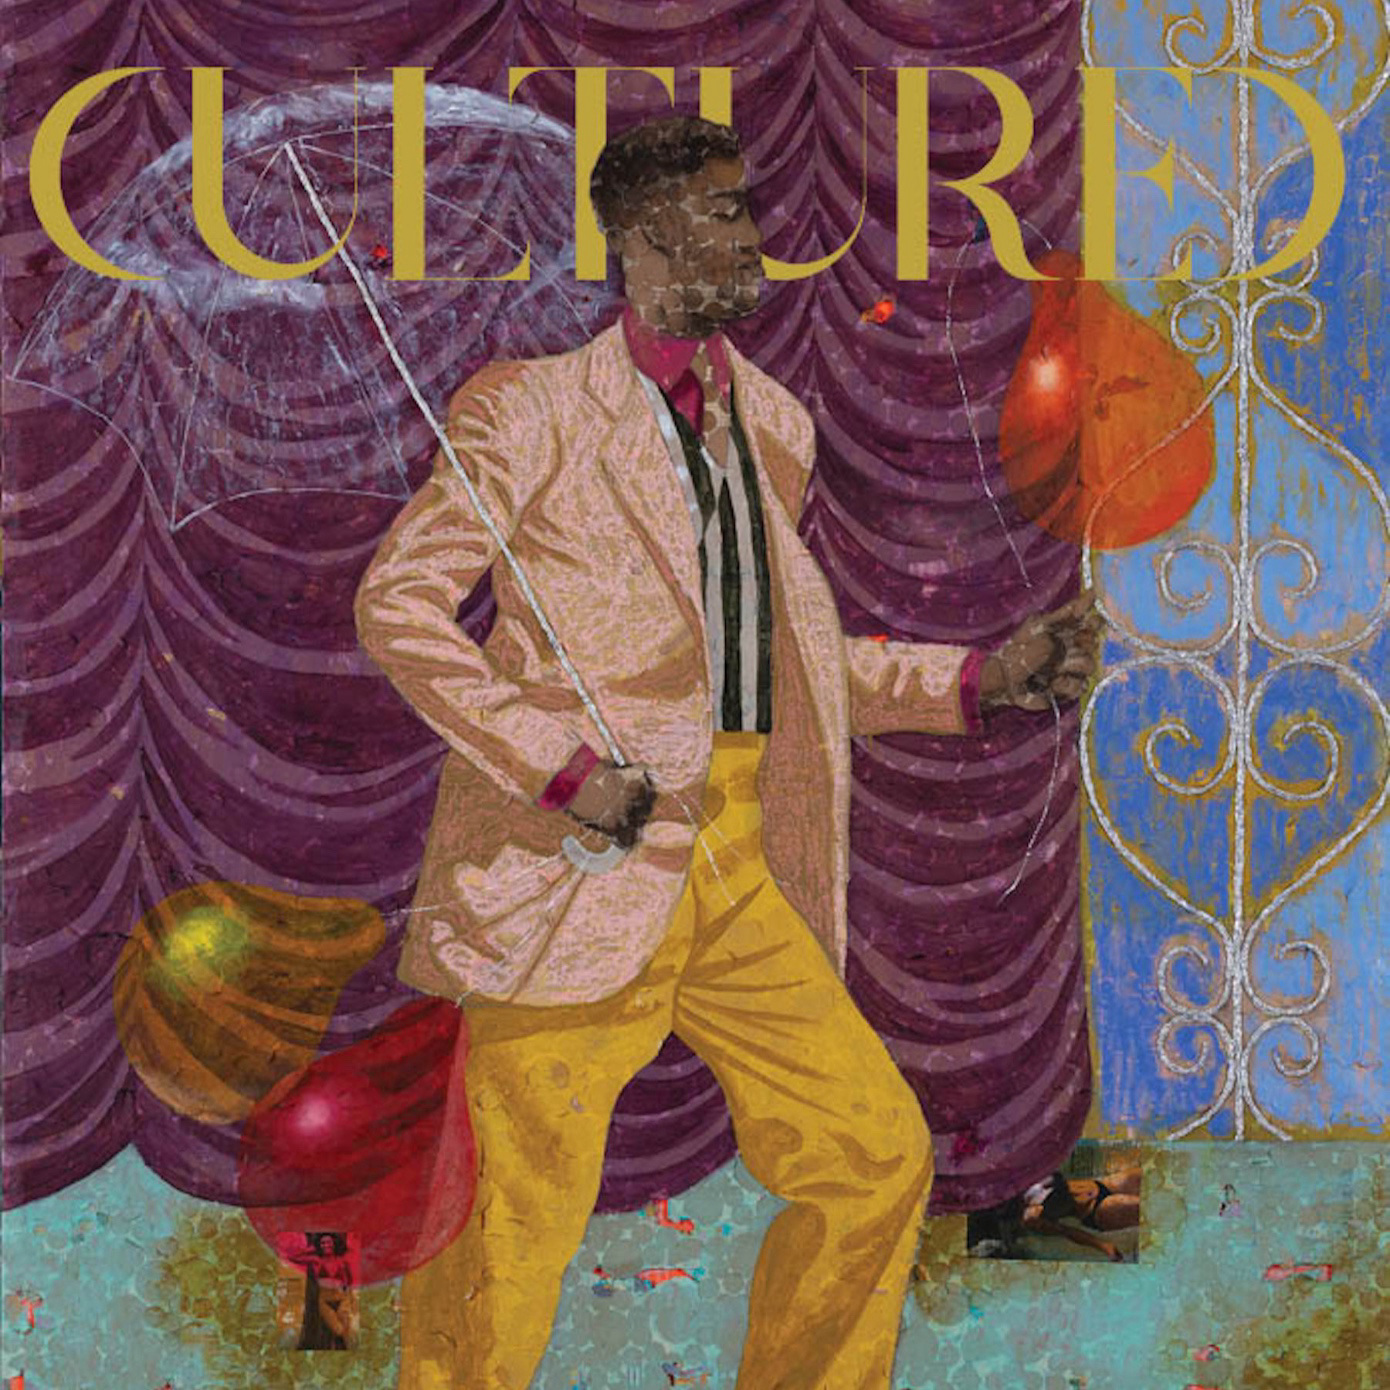 Derek Fordjour is the Next Artist Featured in <em>Cultured's</em> 10-Year Anniversary Celebration